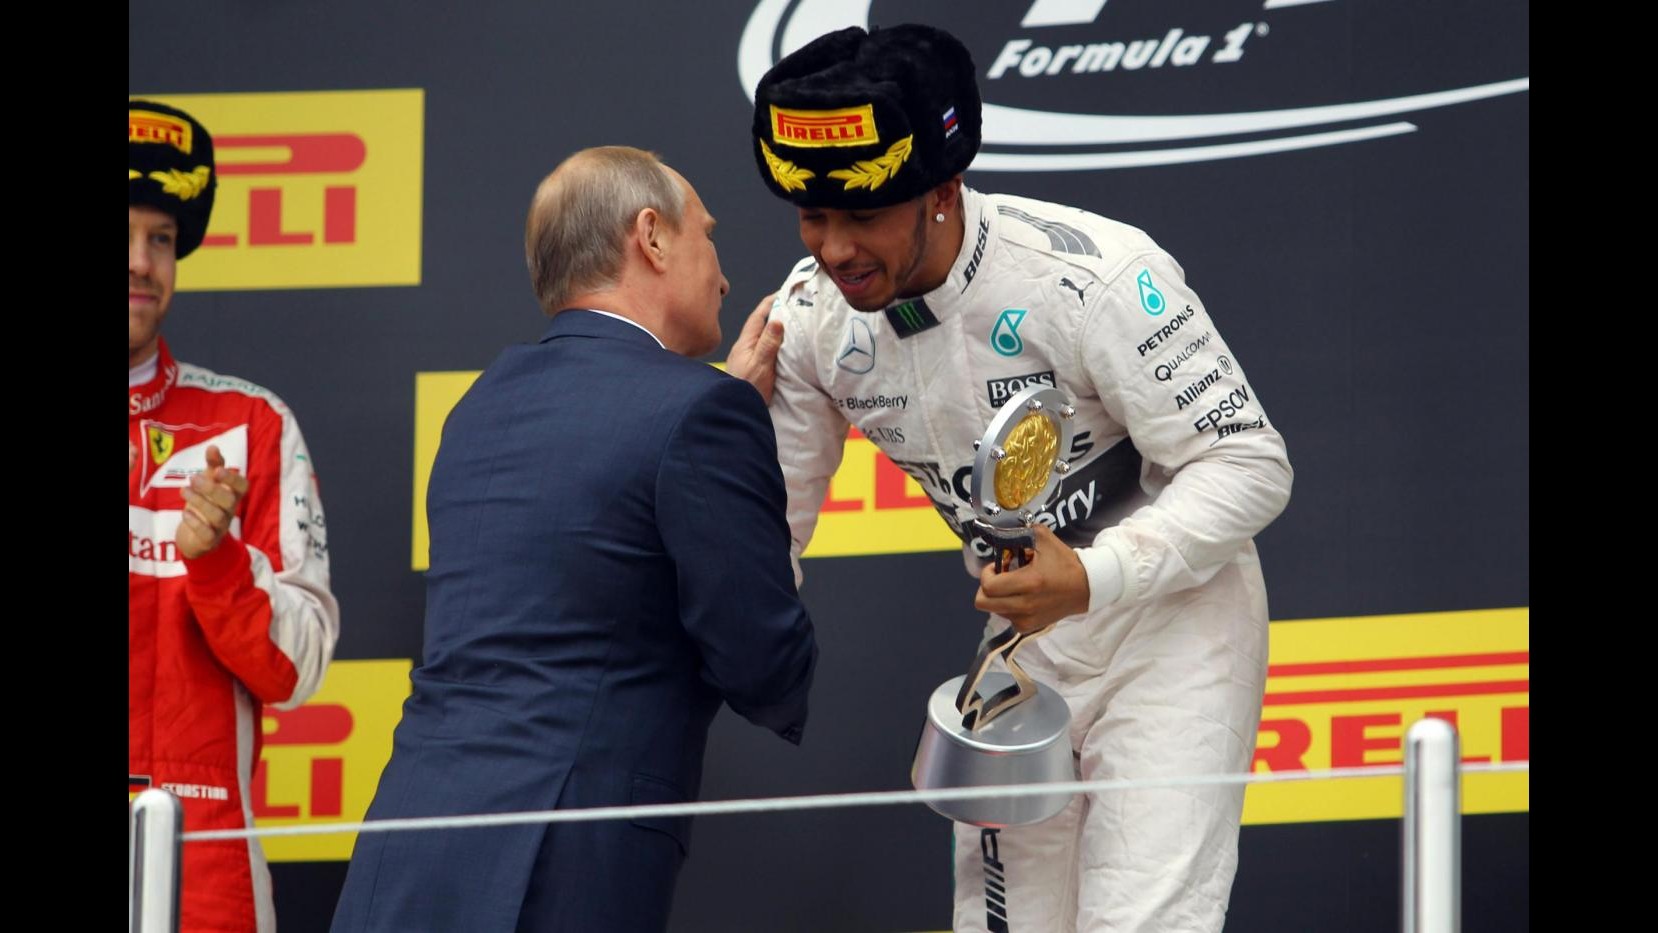 F1, Hamilton: Momento speciale per me, ringrazio il team